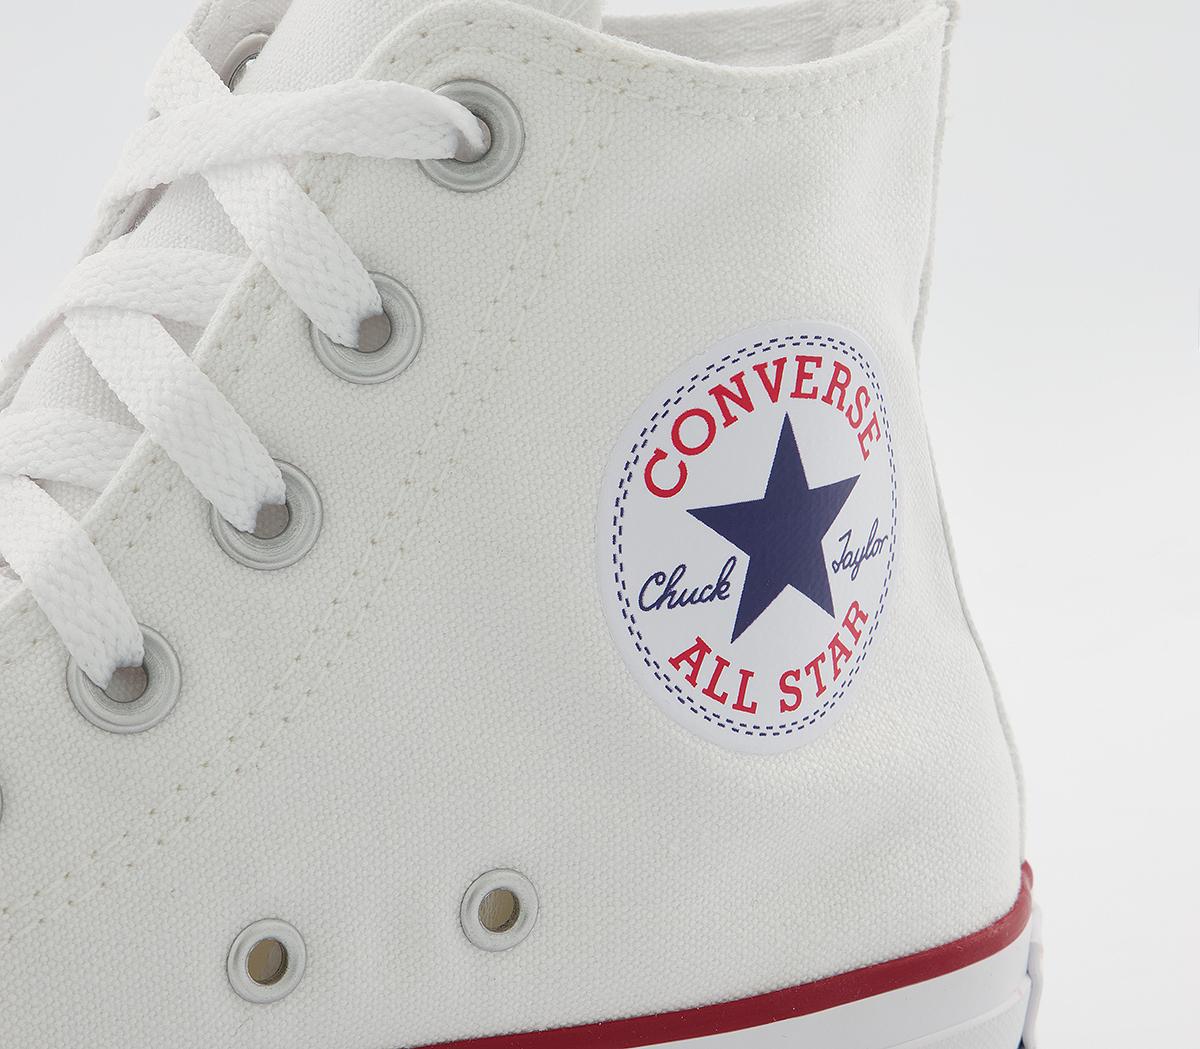 Converse All Star hi optical white canvas